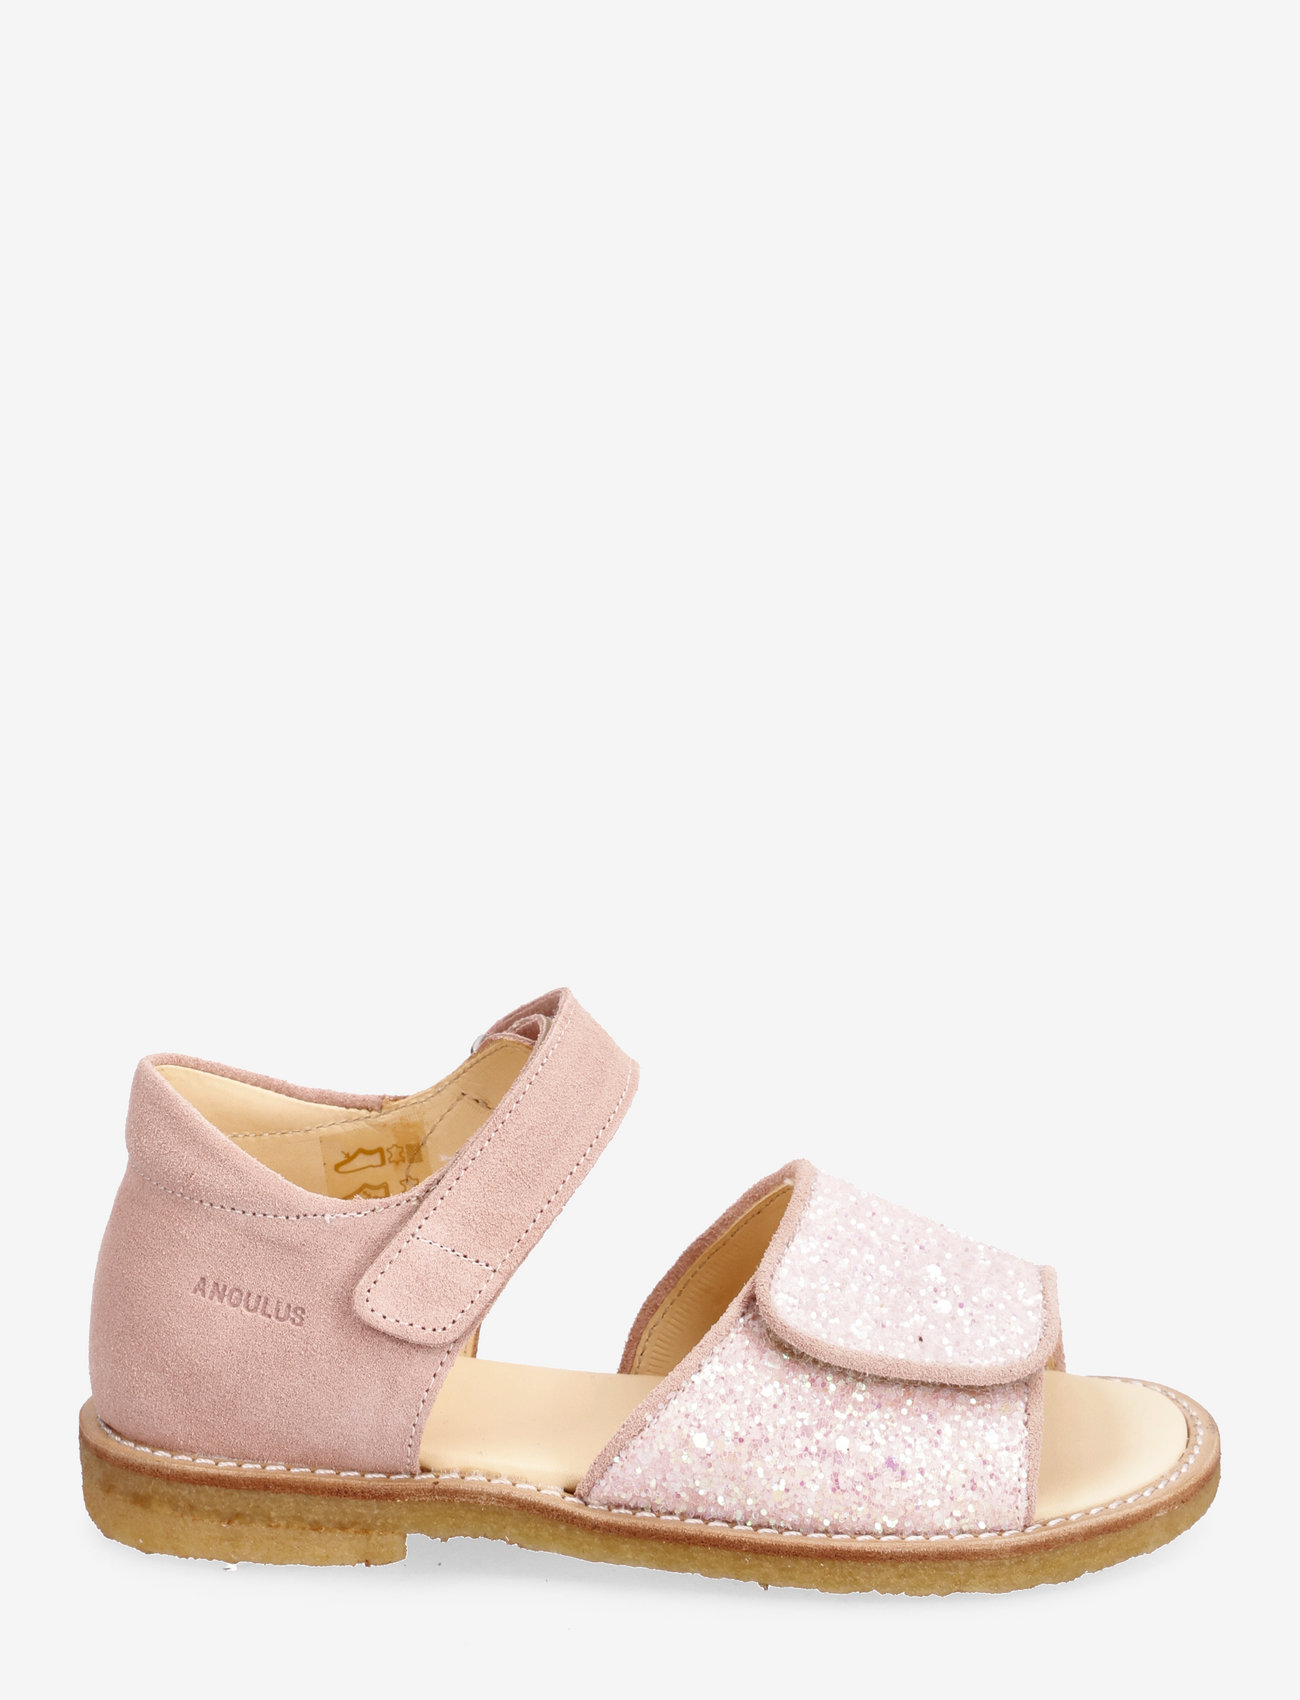 ANGULUS - Sandals - flat - open toe - clo - kesälöytöjä - 1139/2698 peach/rosa glitter - 1